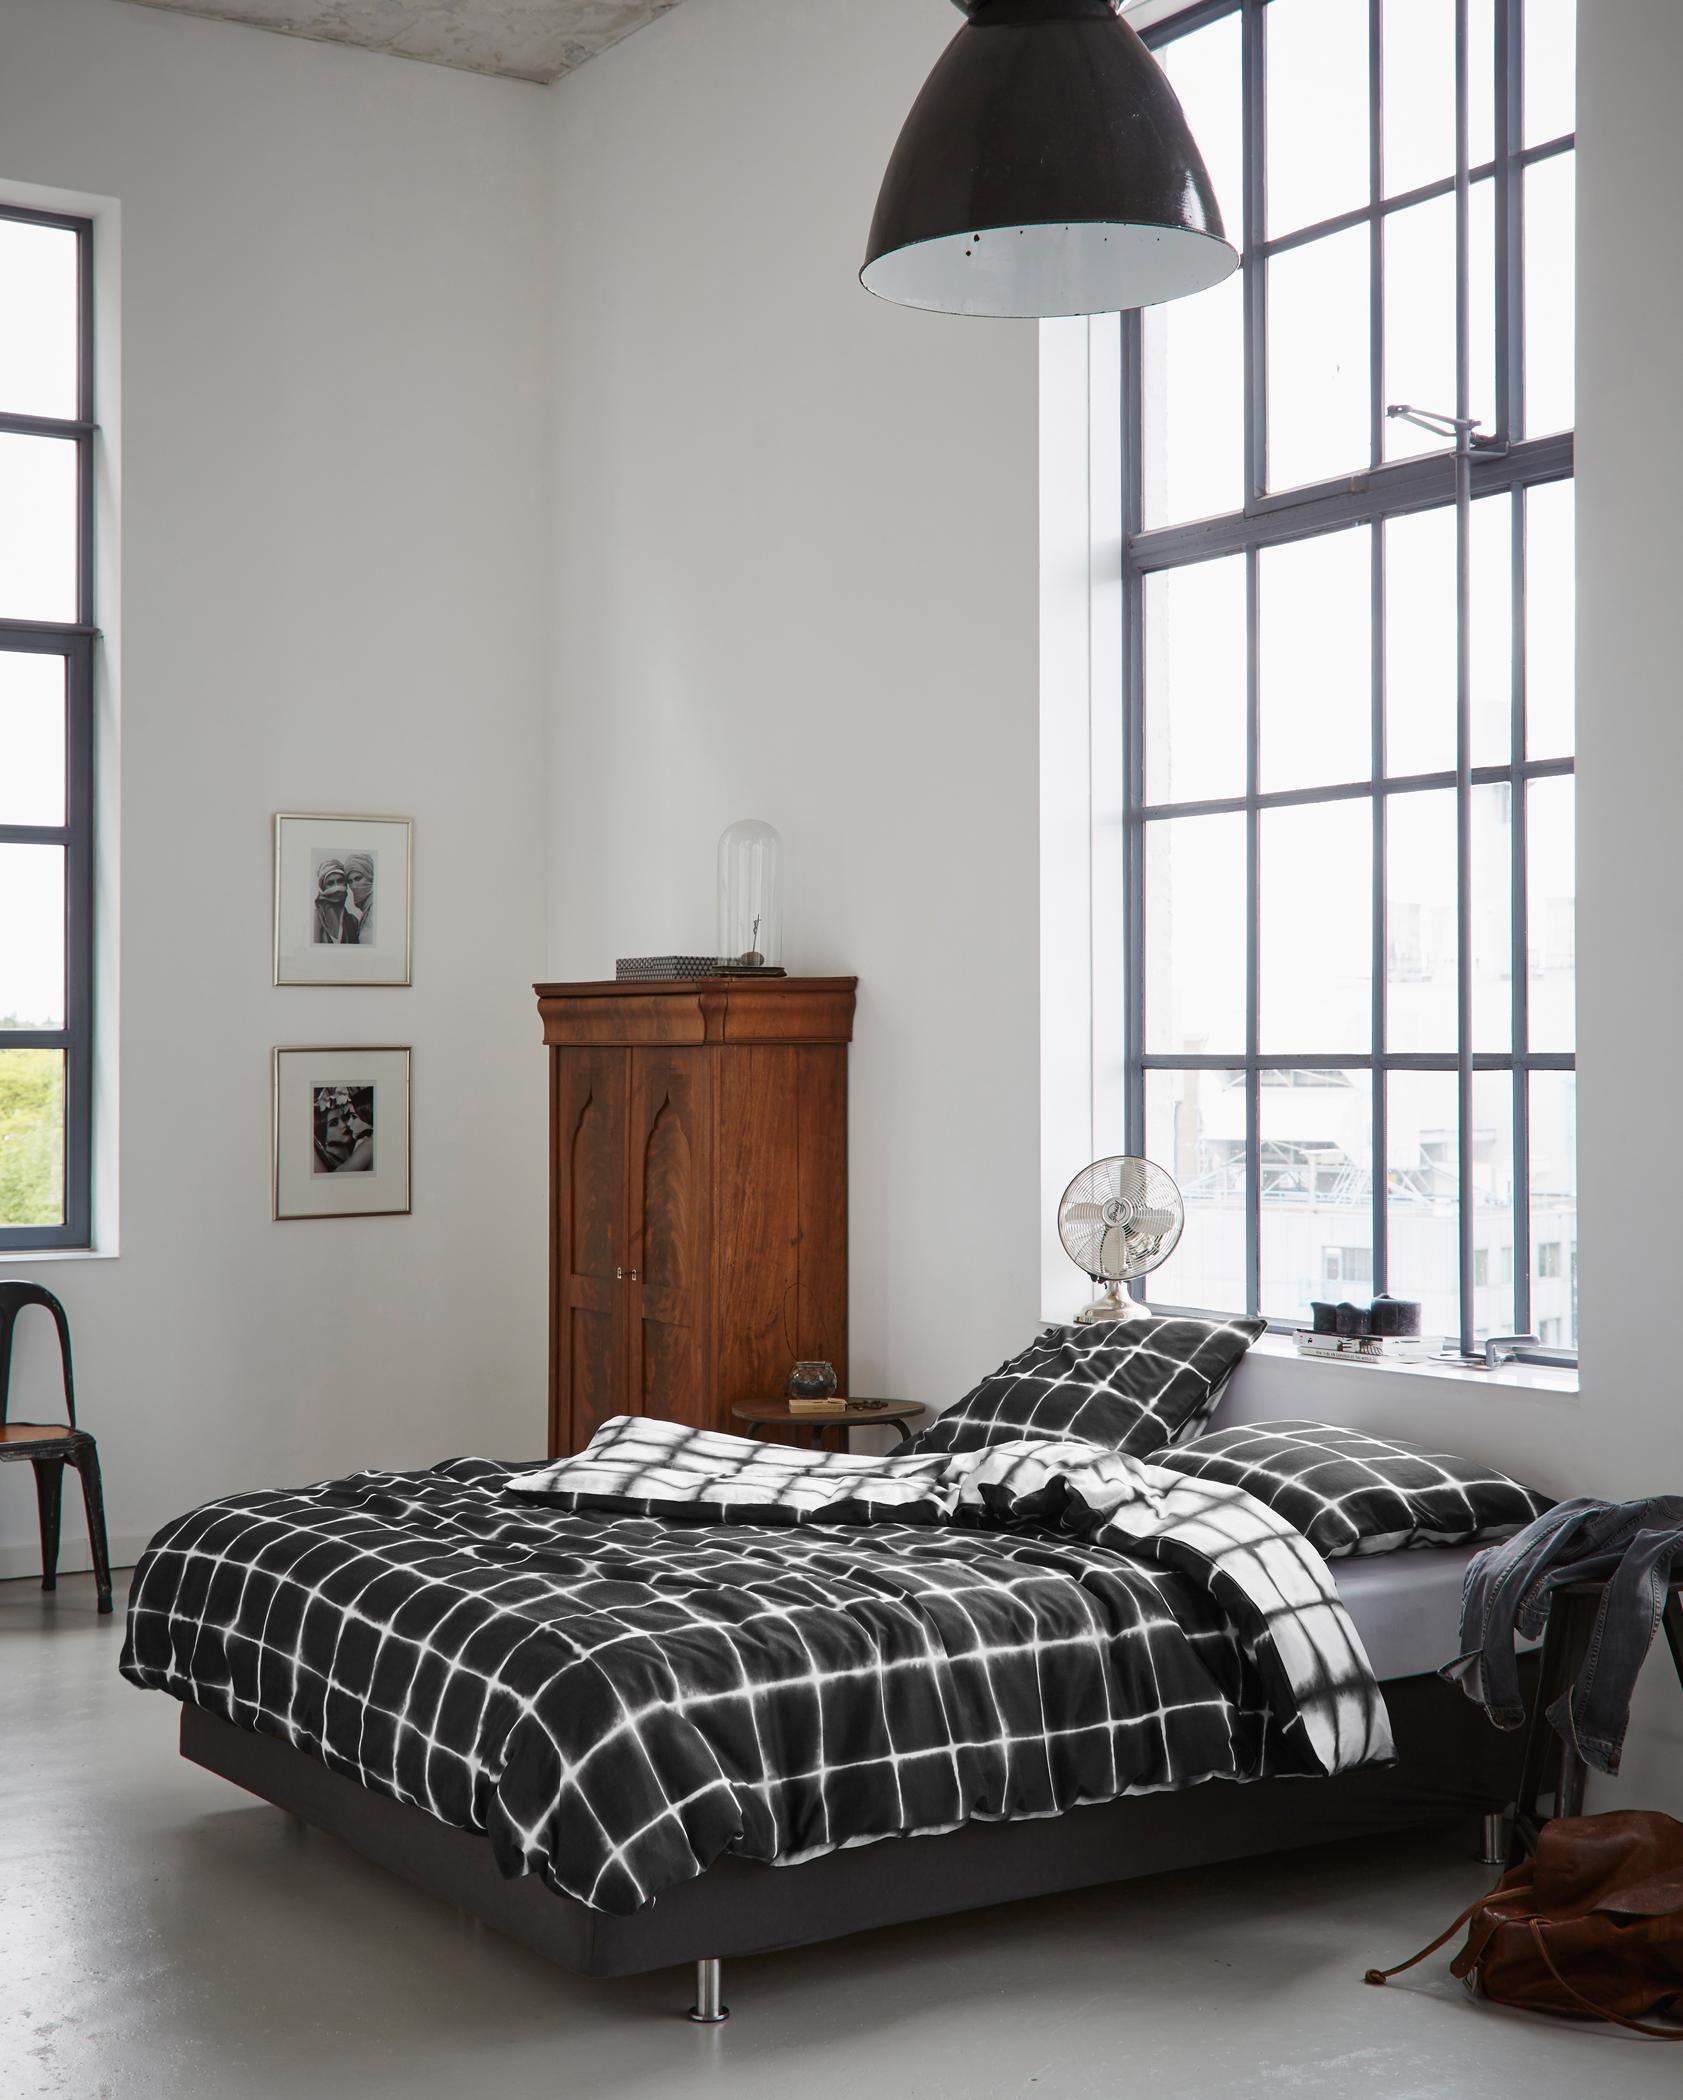 Wendebettwäsche in Schwarz-Weiß #bett #bettwäsche #minimalistisch #zimmergestaltung ©Essenza Home/Essenza